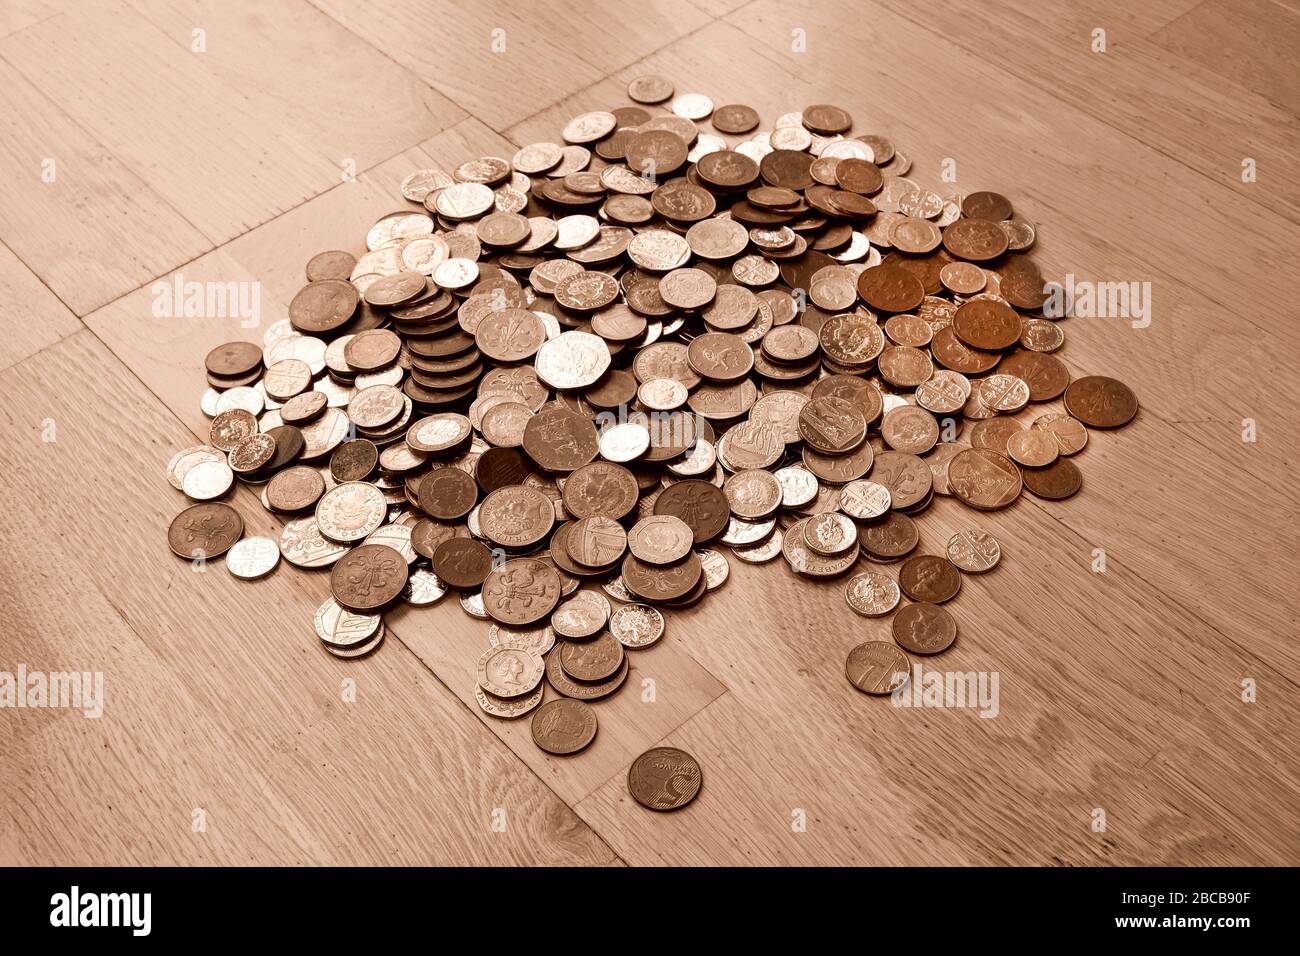 Monnaie britannique, des centaines de pièces de monnaie de couleur cuivre et argent britannique se sont aléatoirement enroulées l'une sur l'autre, une livre de monnaie, cinquante penny, vingt penny, deux p Banque D'Images